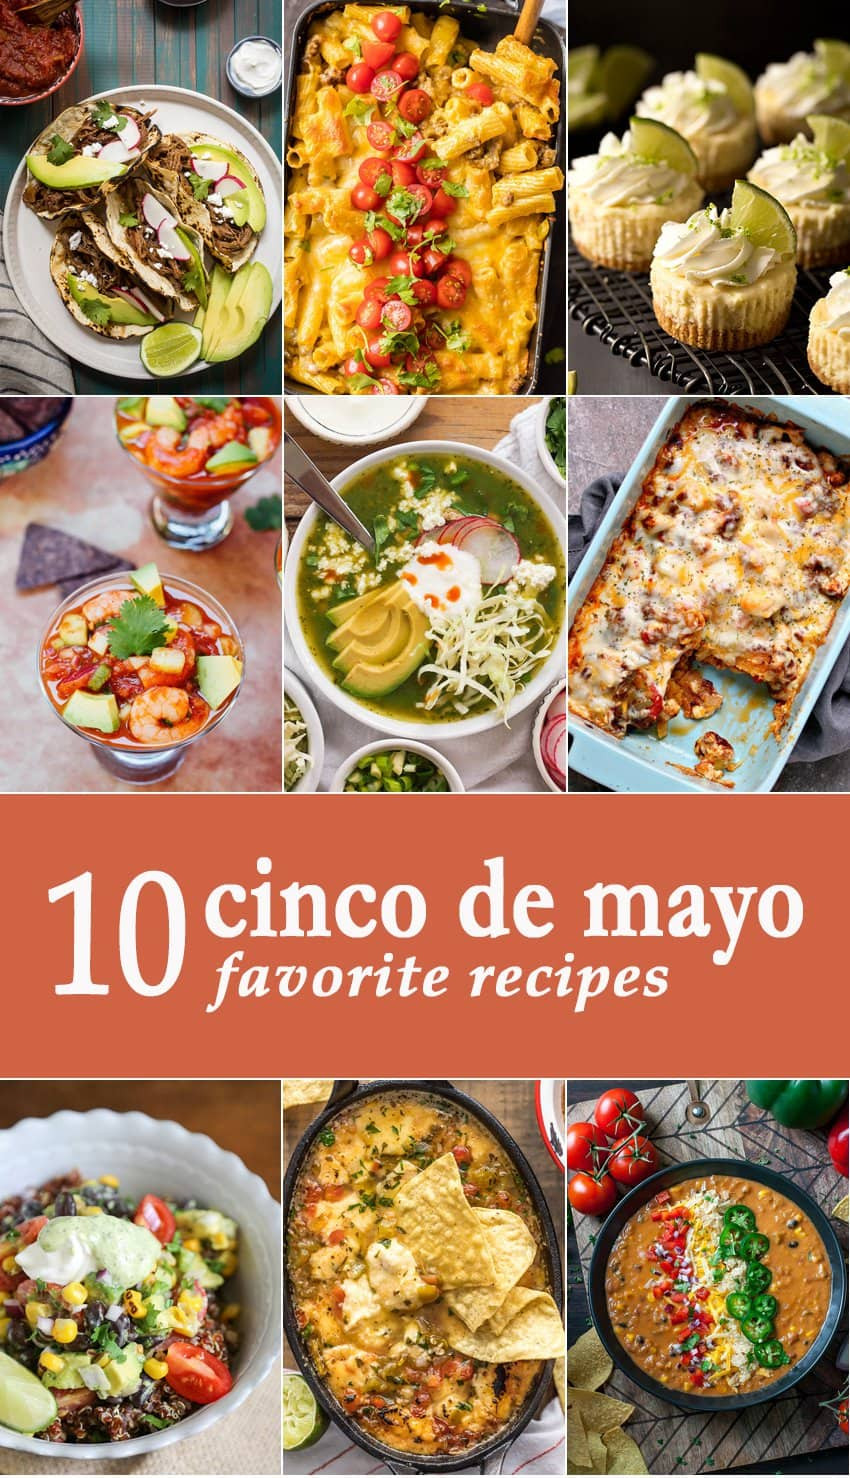 Cinco De Mayo Food Recipes
 10 Favorite Cinco de Mayo Recipes The Cookie Rookie